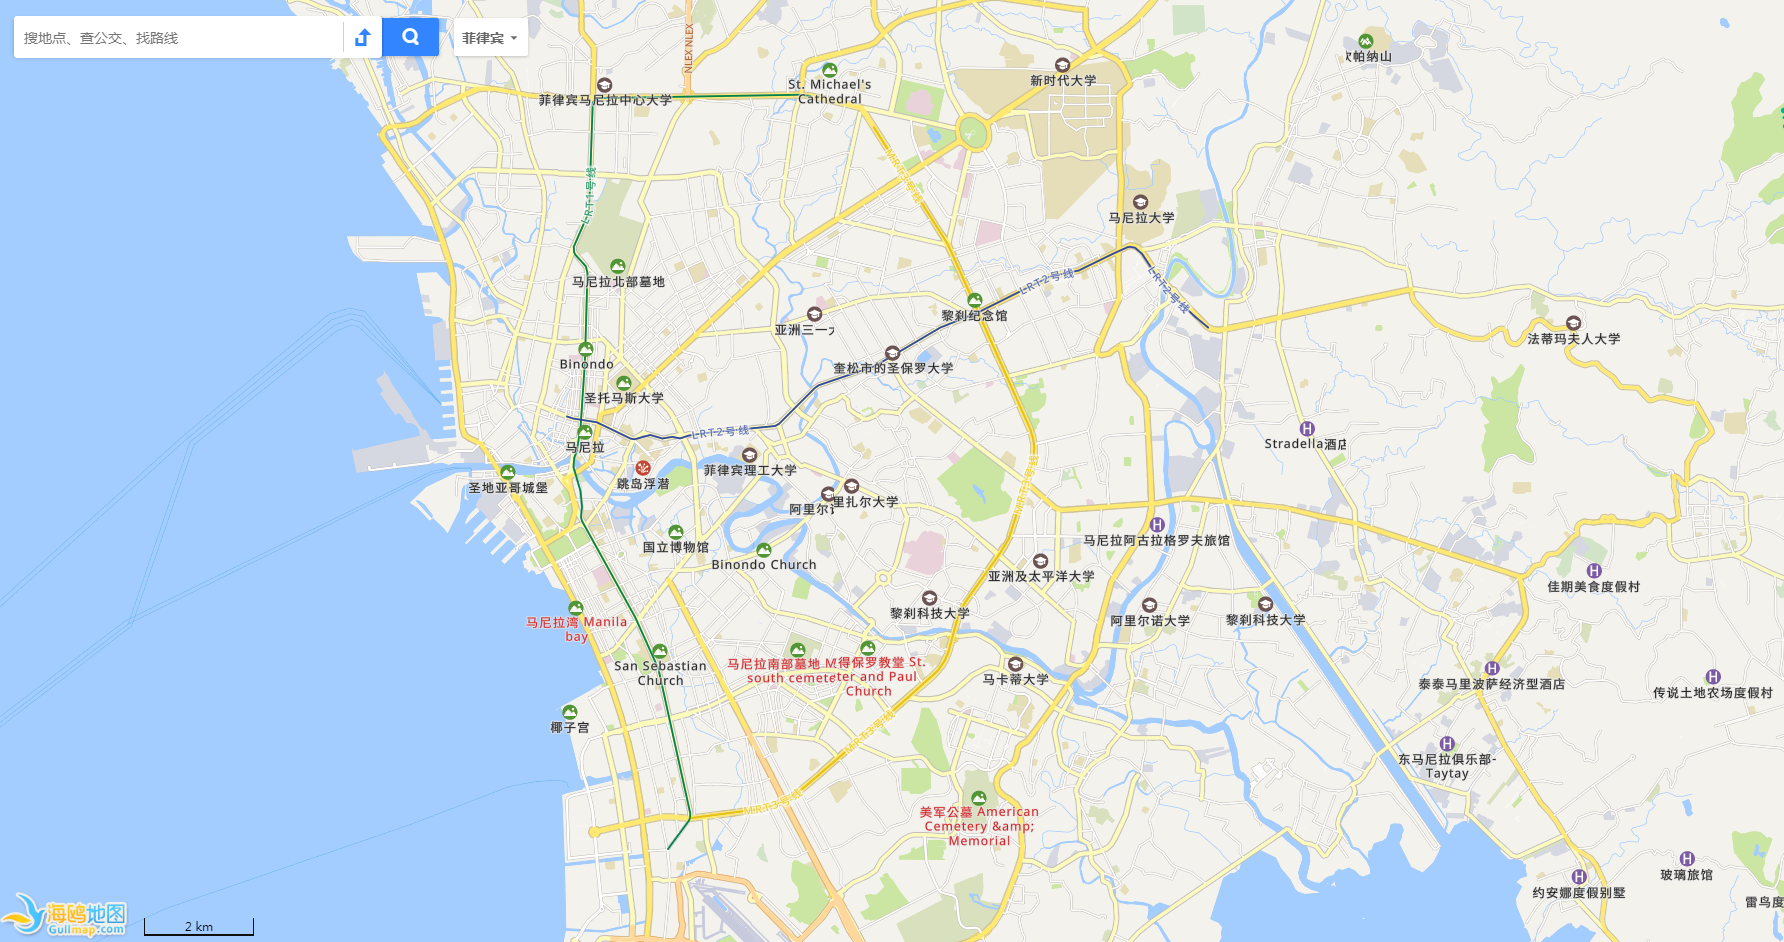 菲律賓地圖網頁版